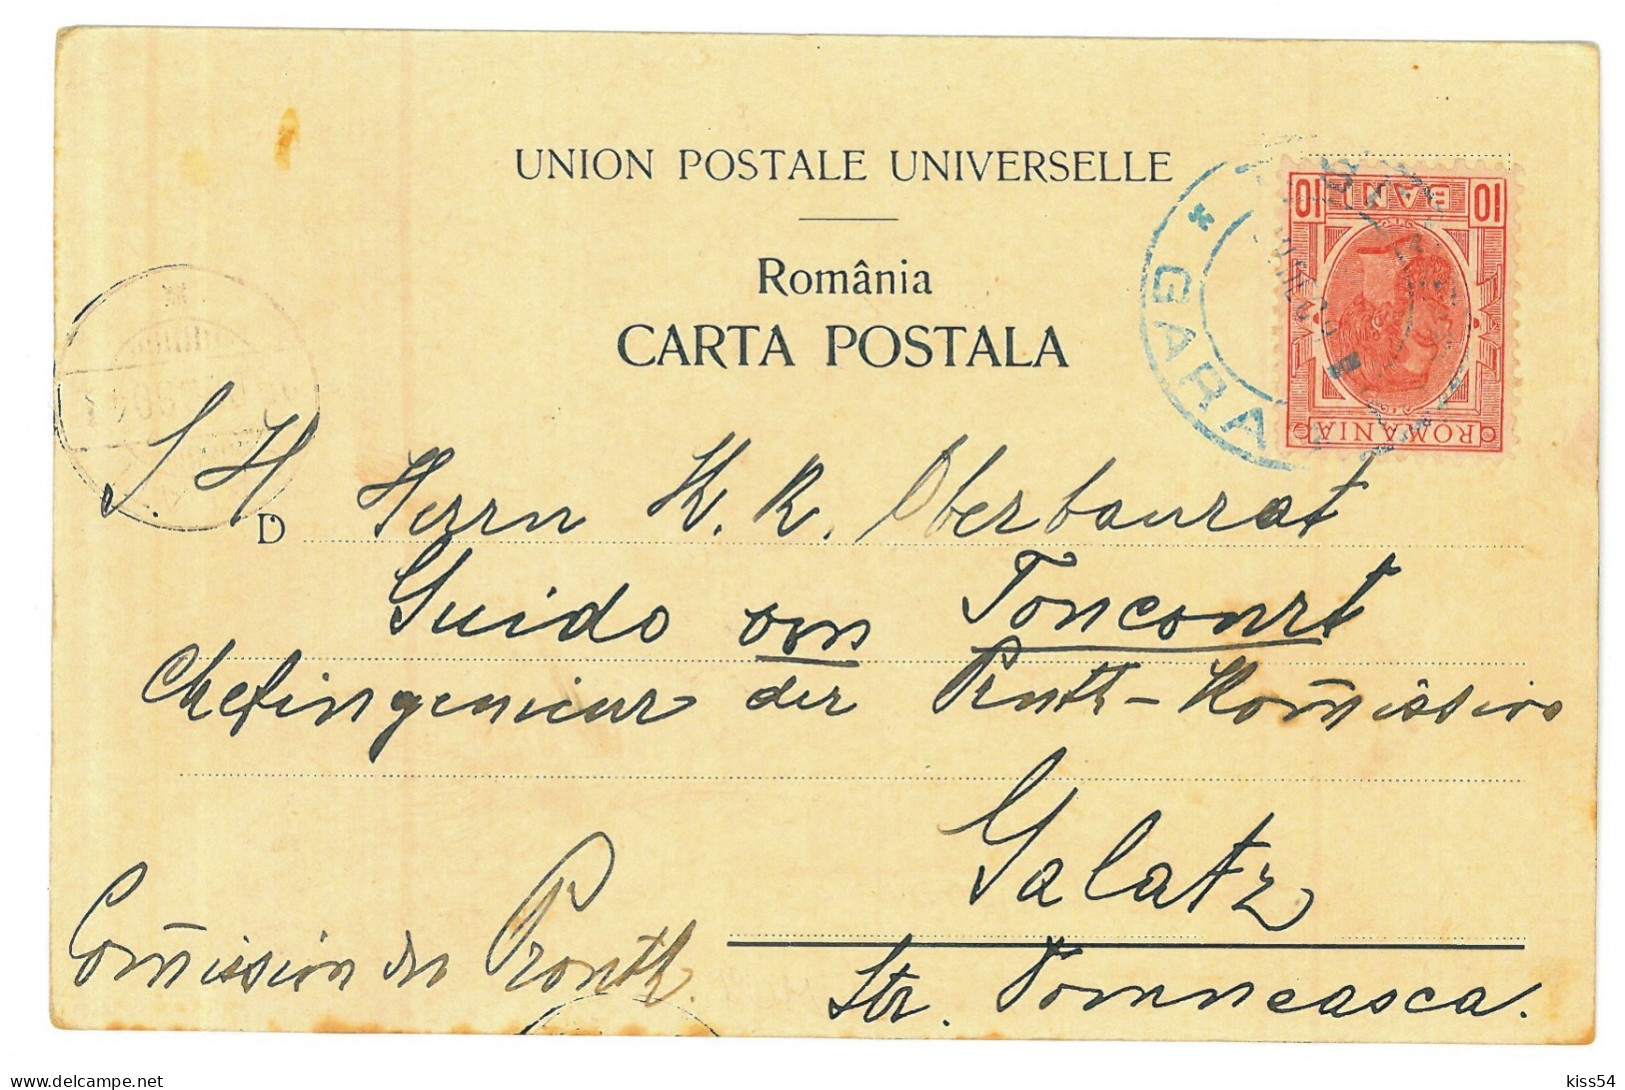 RO 74 - 20559 TURNU-SEVERIN, Firemen In Auction, Romania - Old Postcard - Used - 1904 - Rumänien